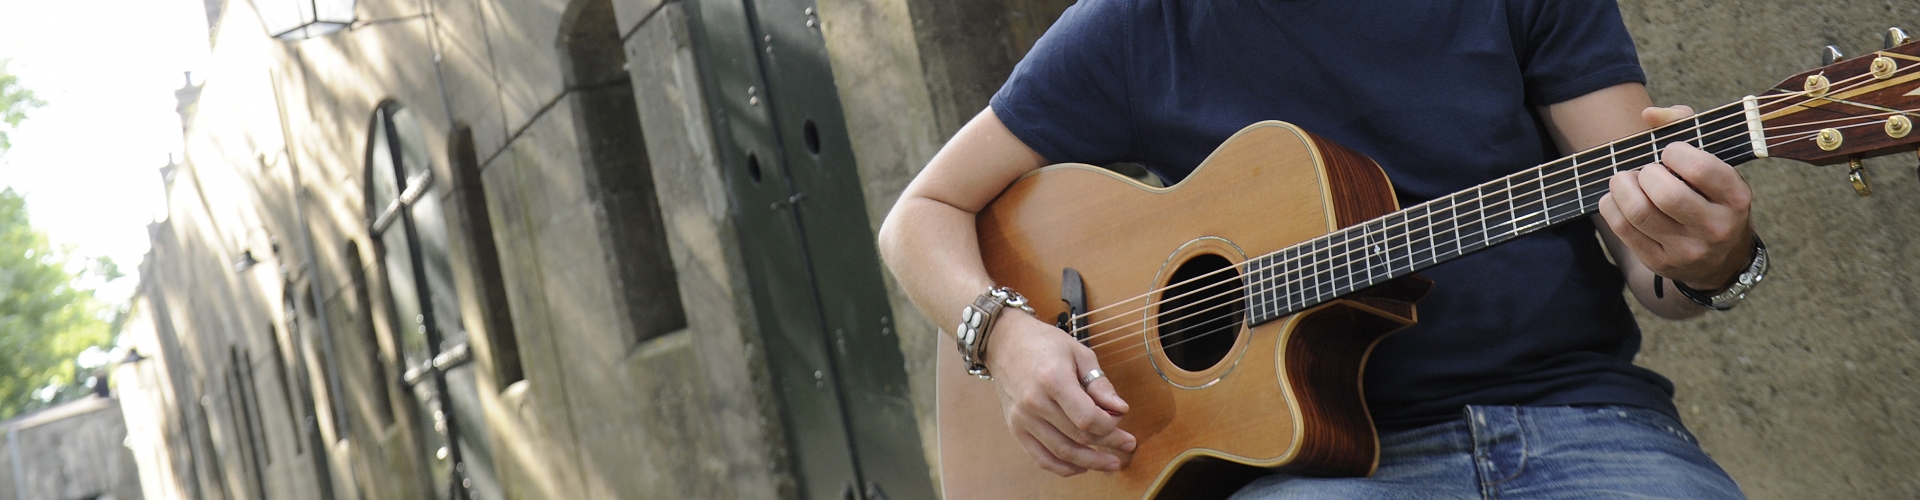 Dhr Plaatsen gezond verstand Online gitaarles cursus voor beginners